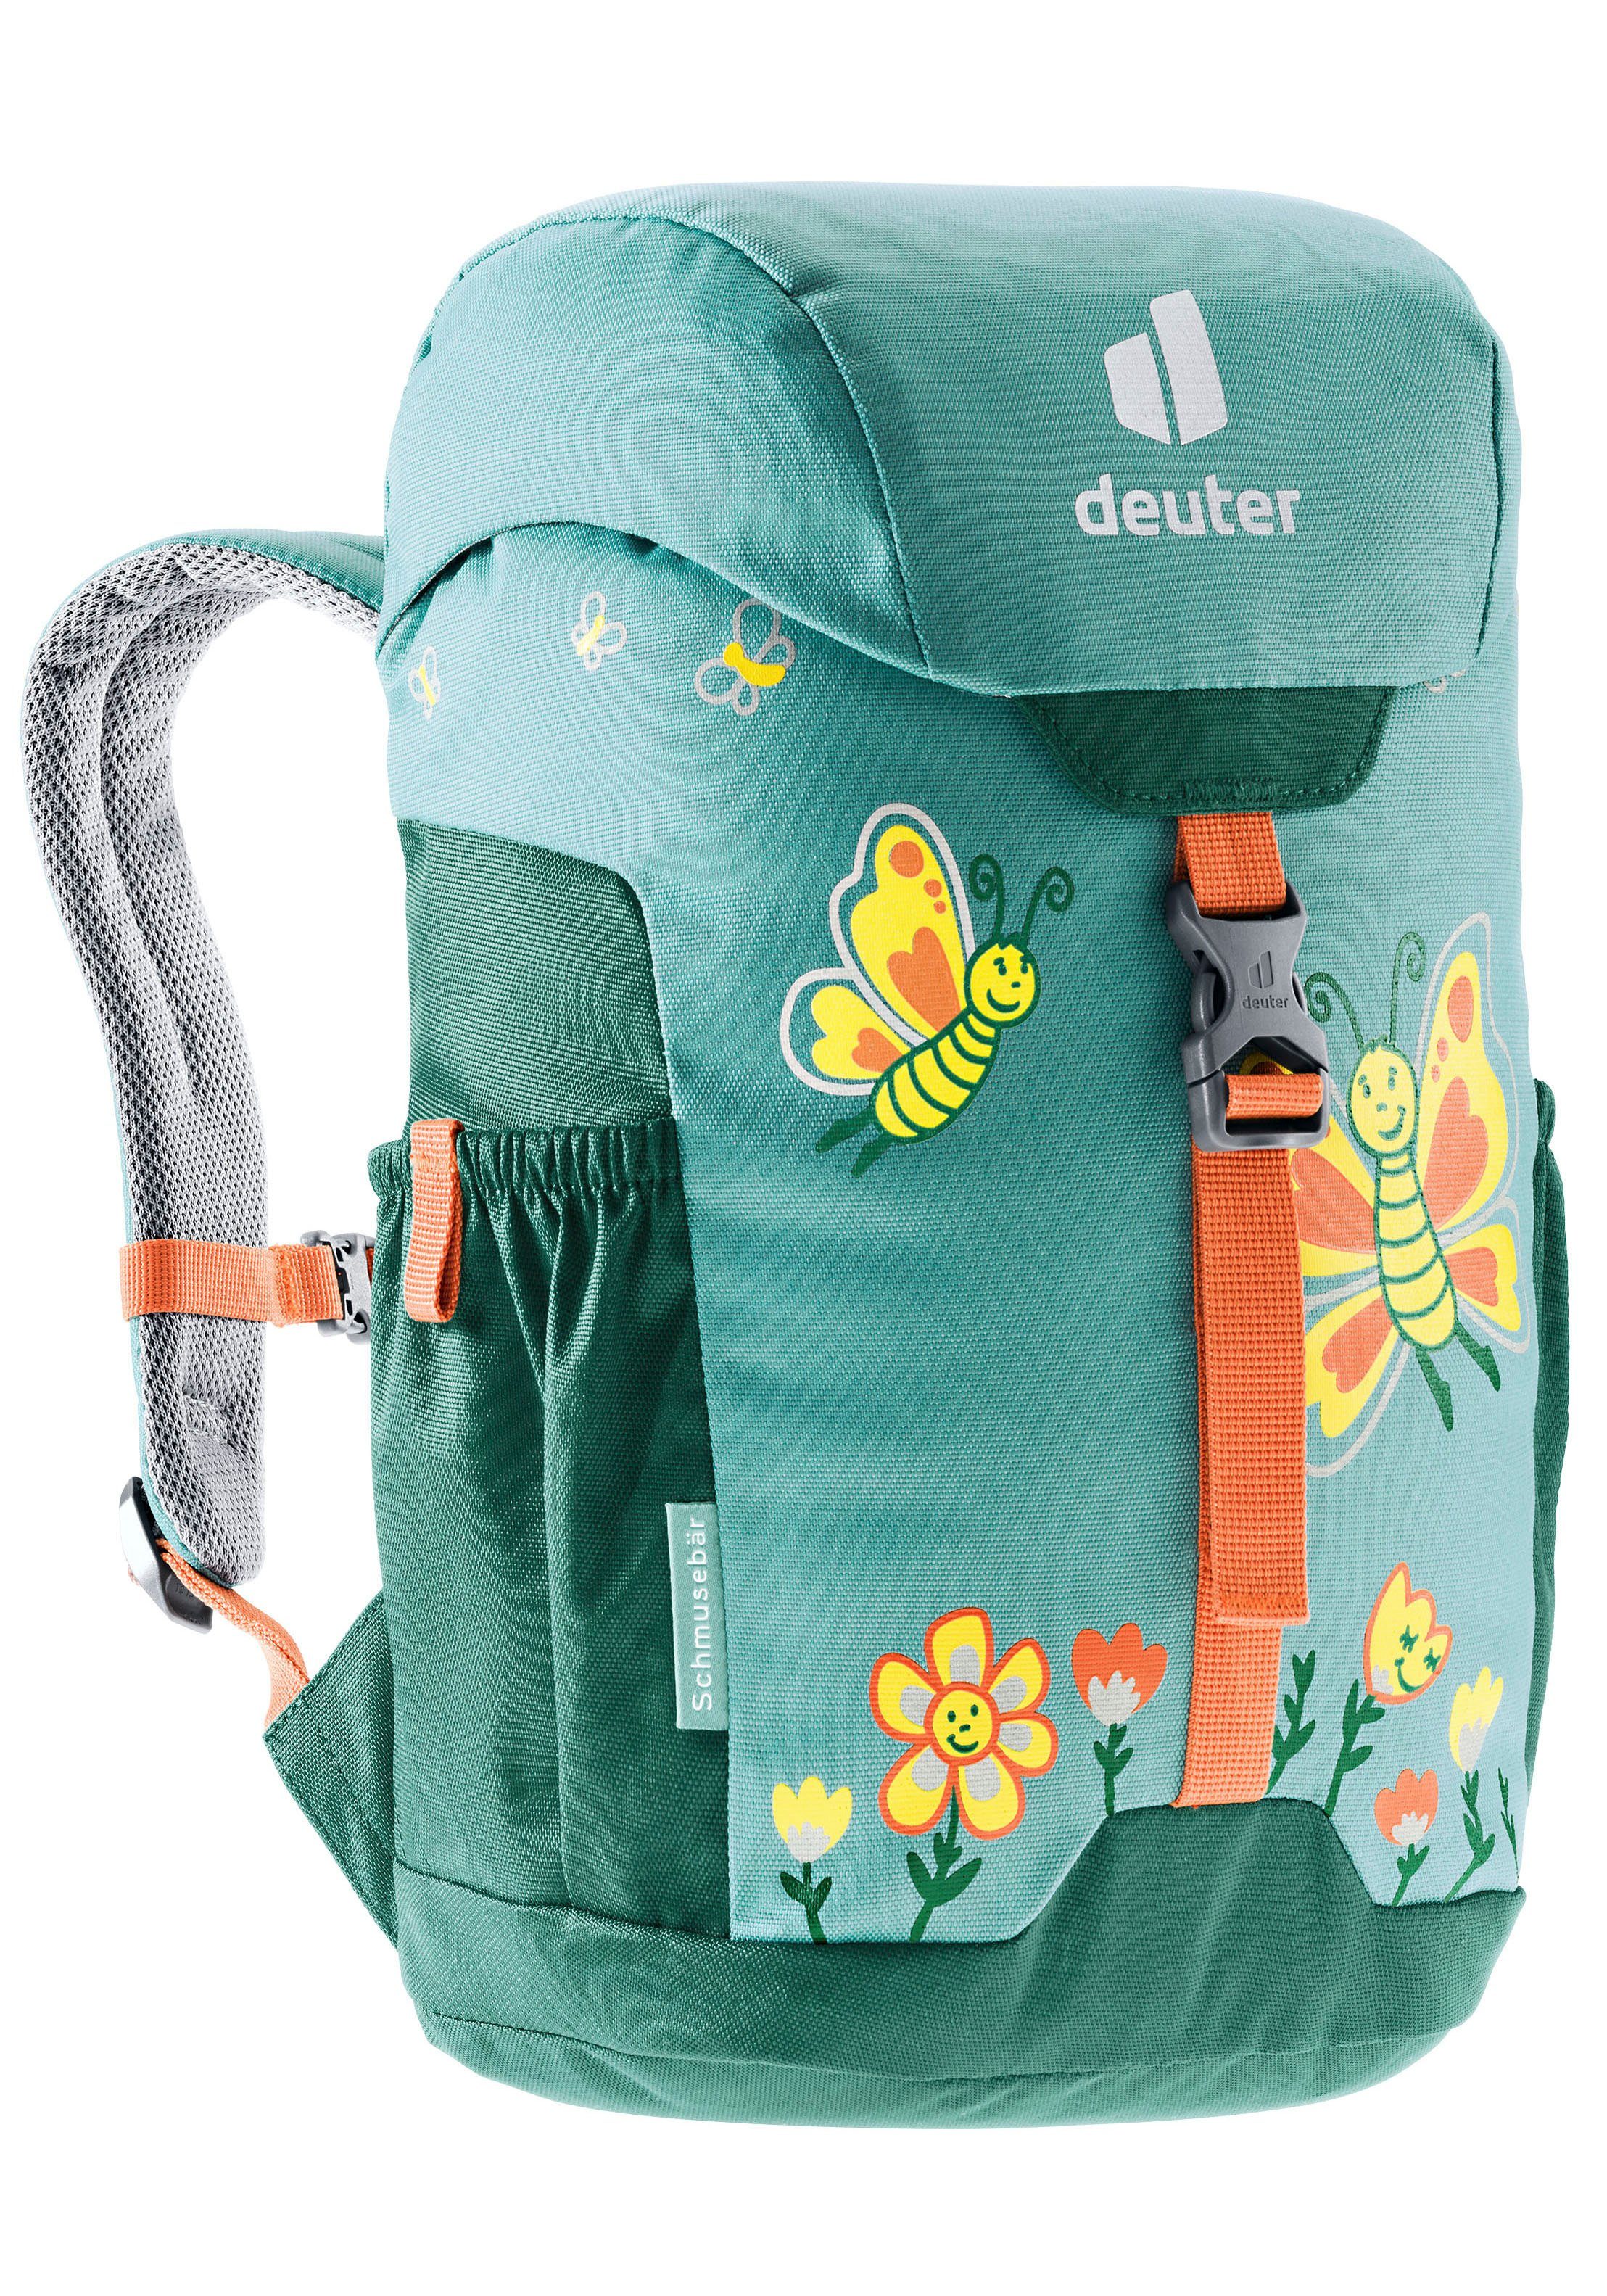 deuter dustblue-alpinegreen Kinderrucksack Schmusebär